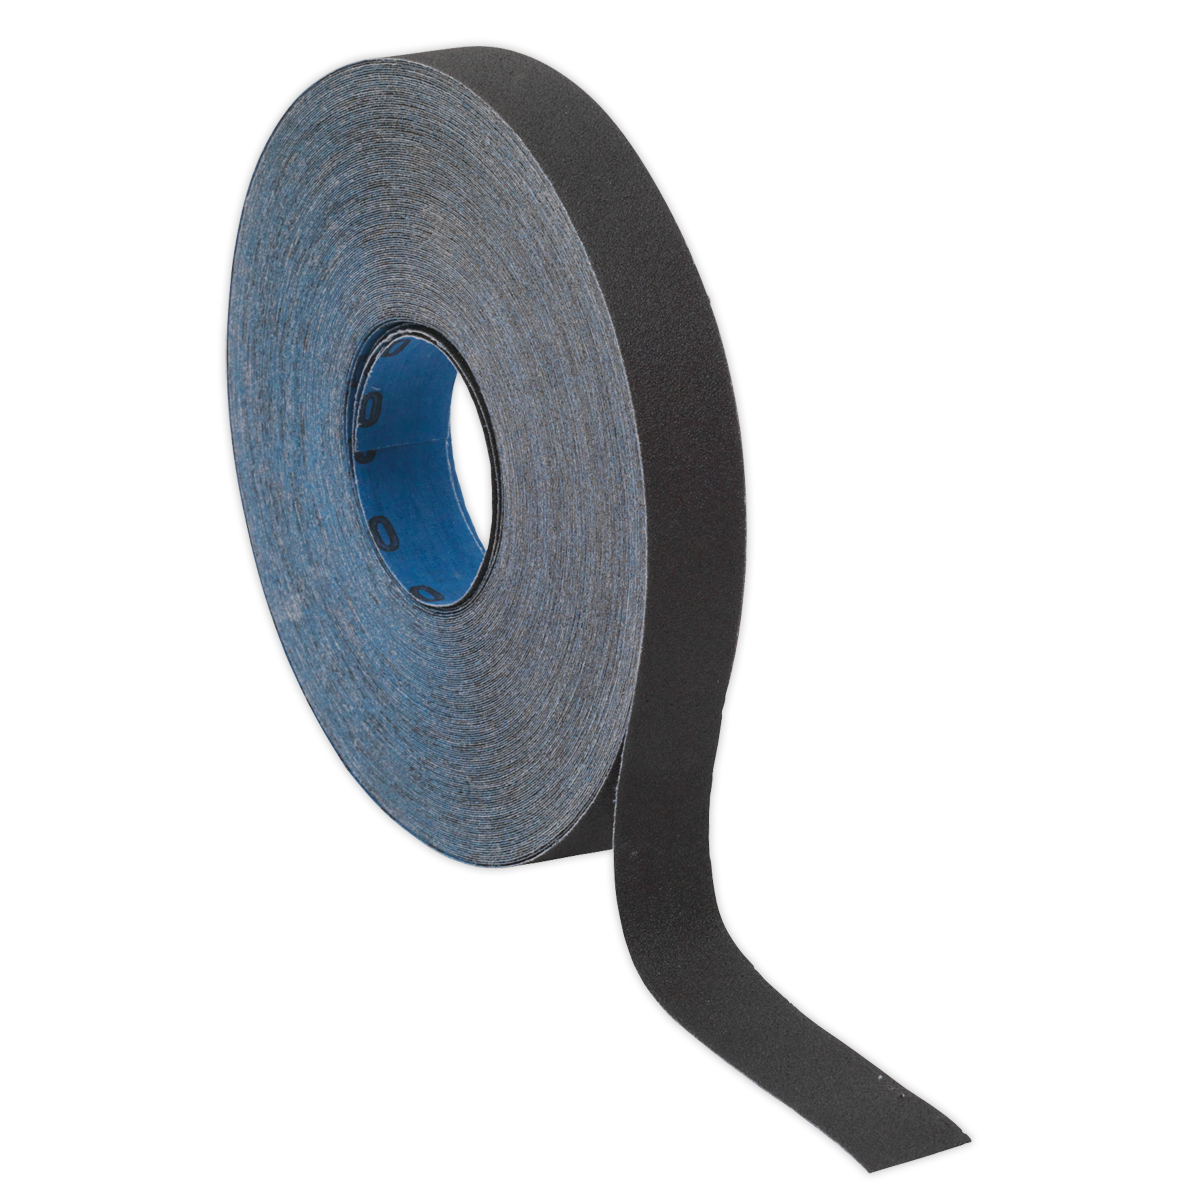 Sealey Emery Roll Blue Twill 25mm x 25m 60Grit